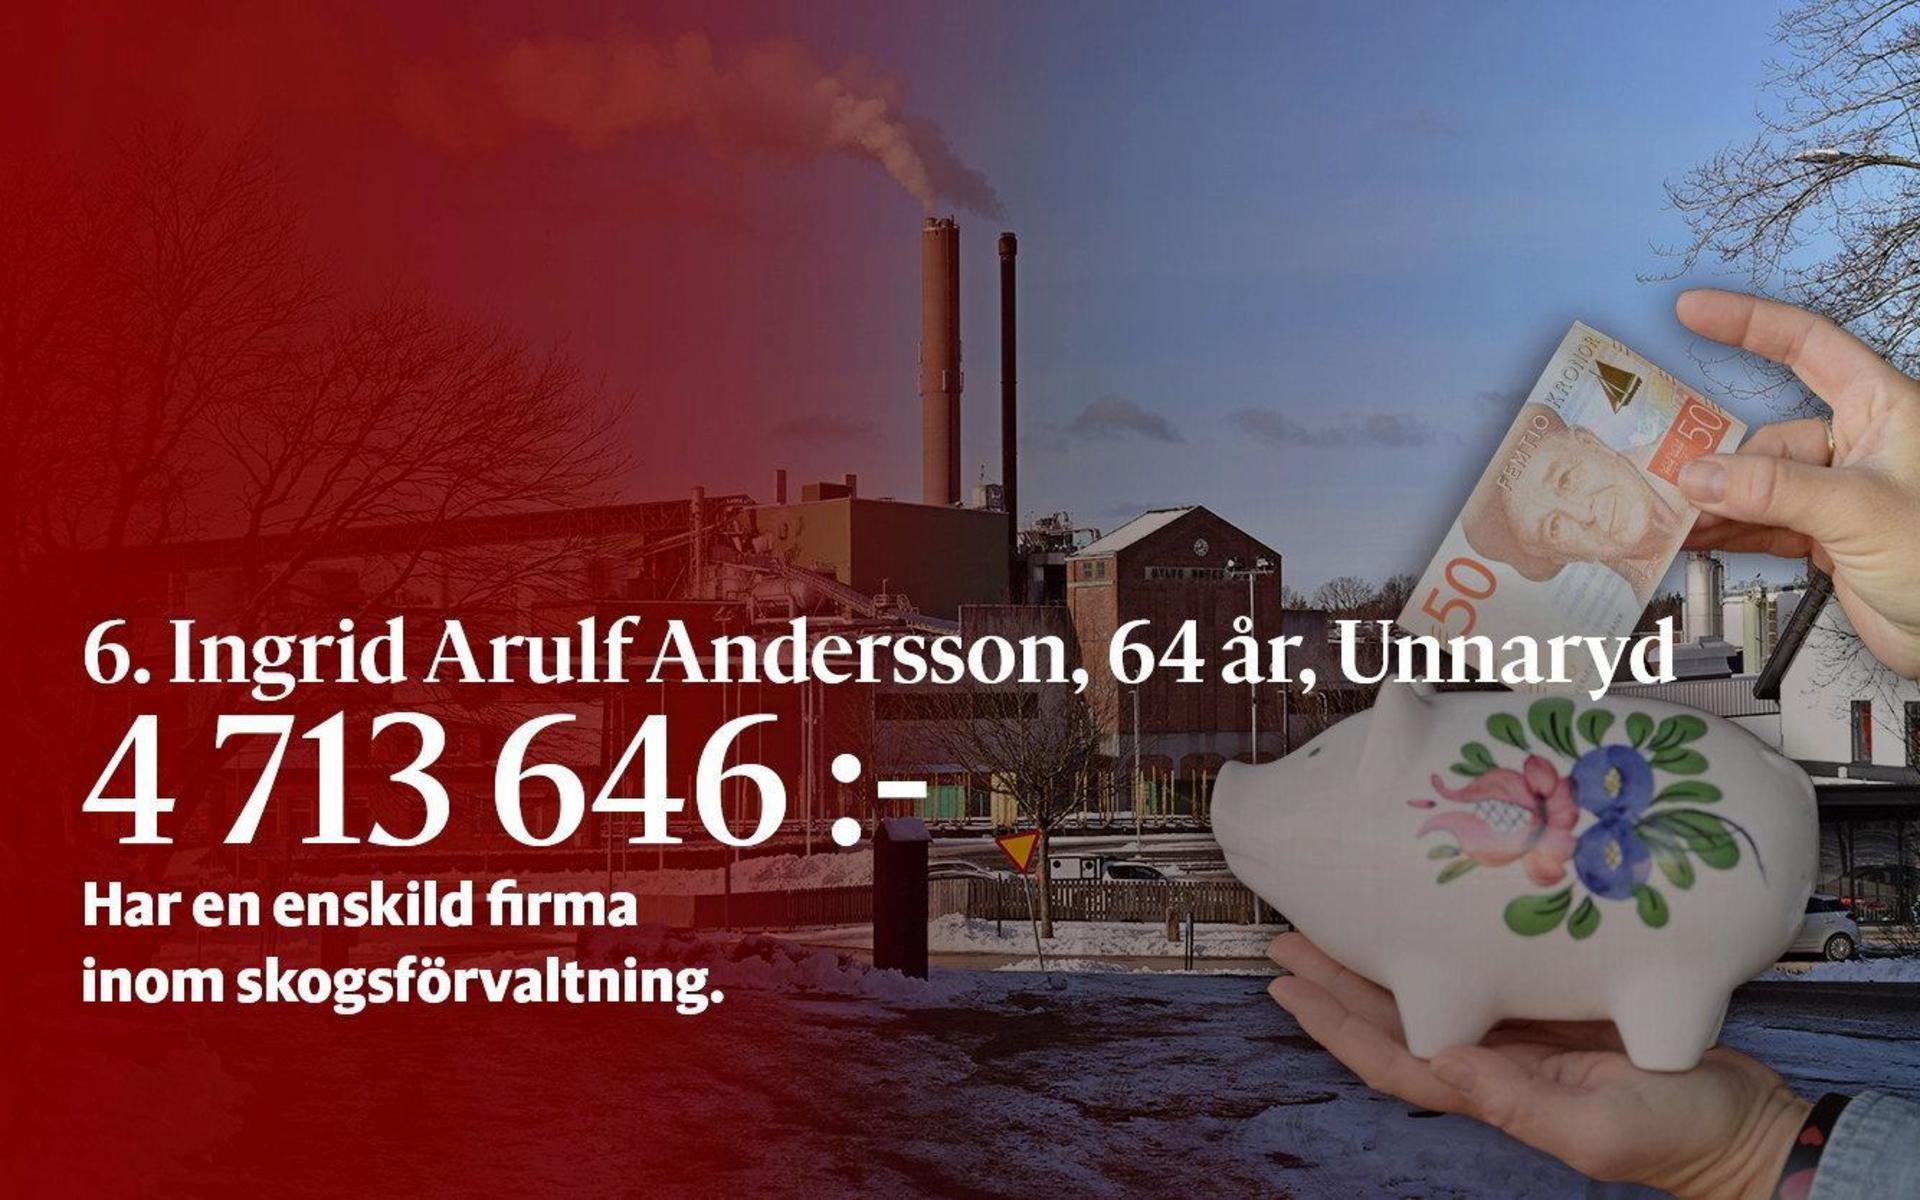 6. Ingrid Arulf Andersson har en enskild firma inom skogsförvaltning, vilket tyder på att hon äger skog.